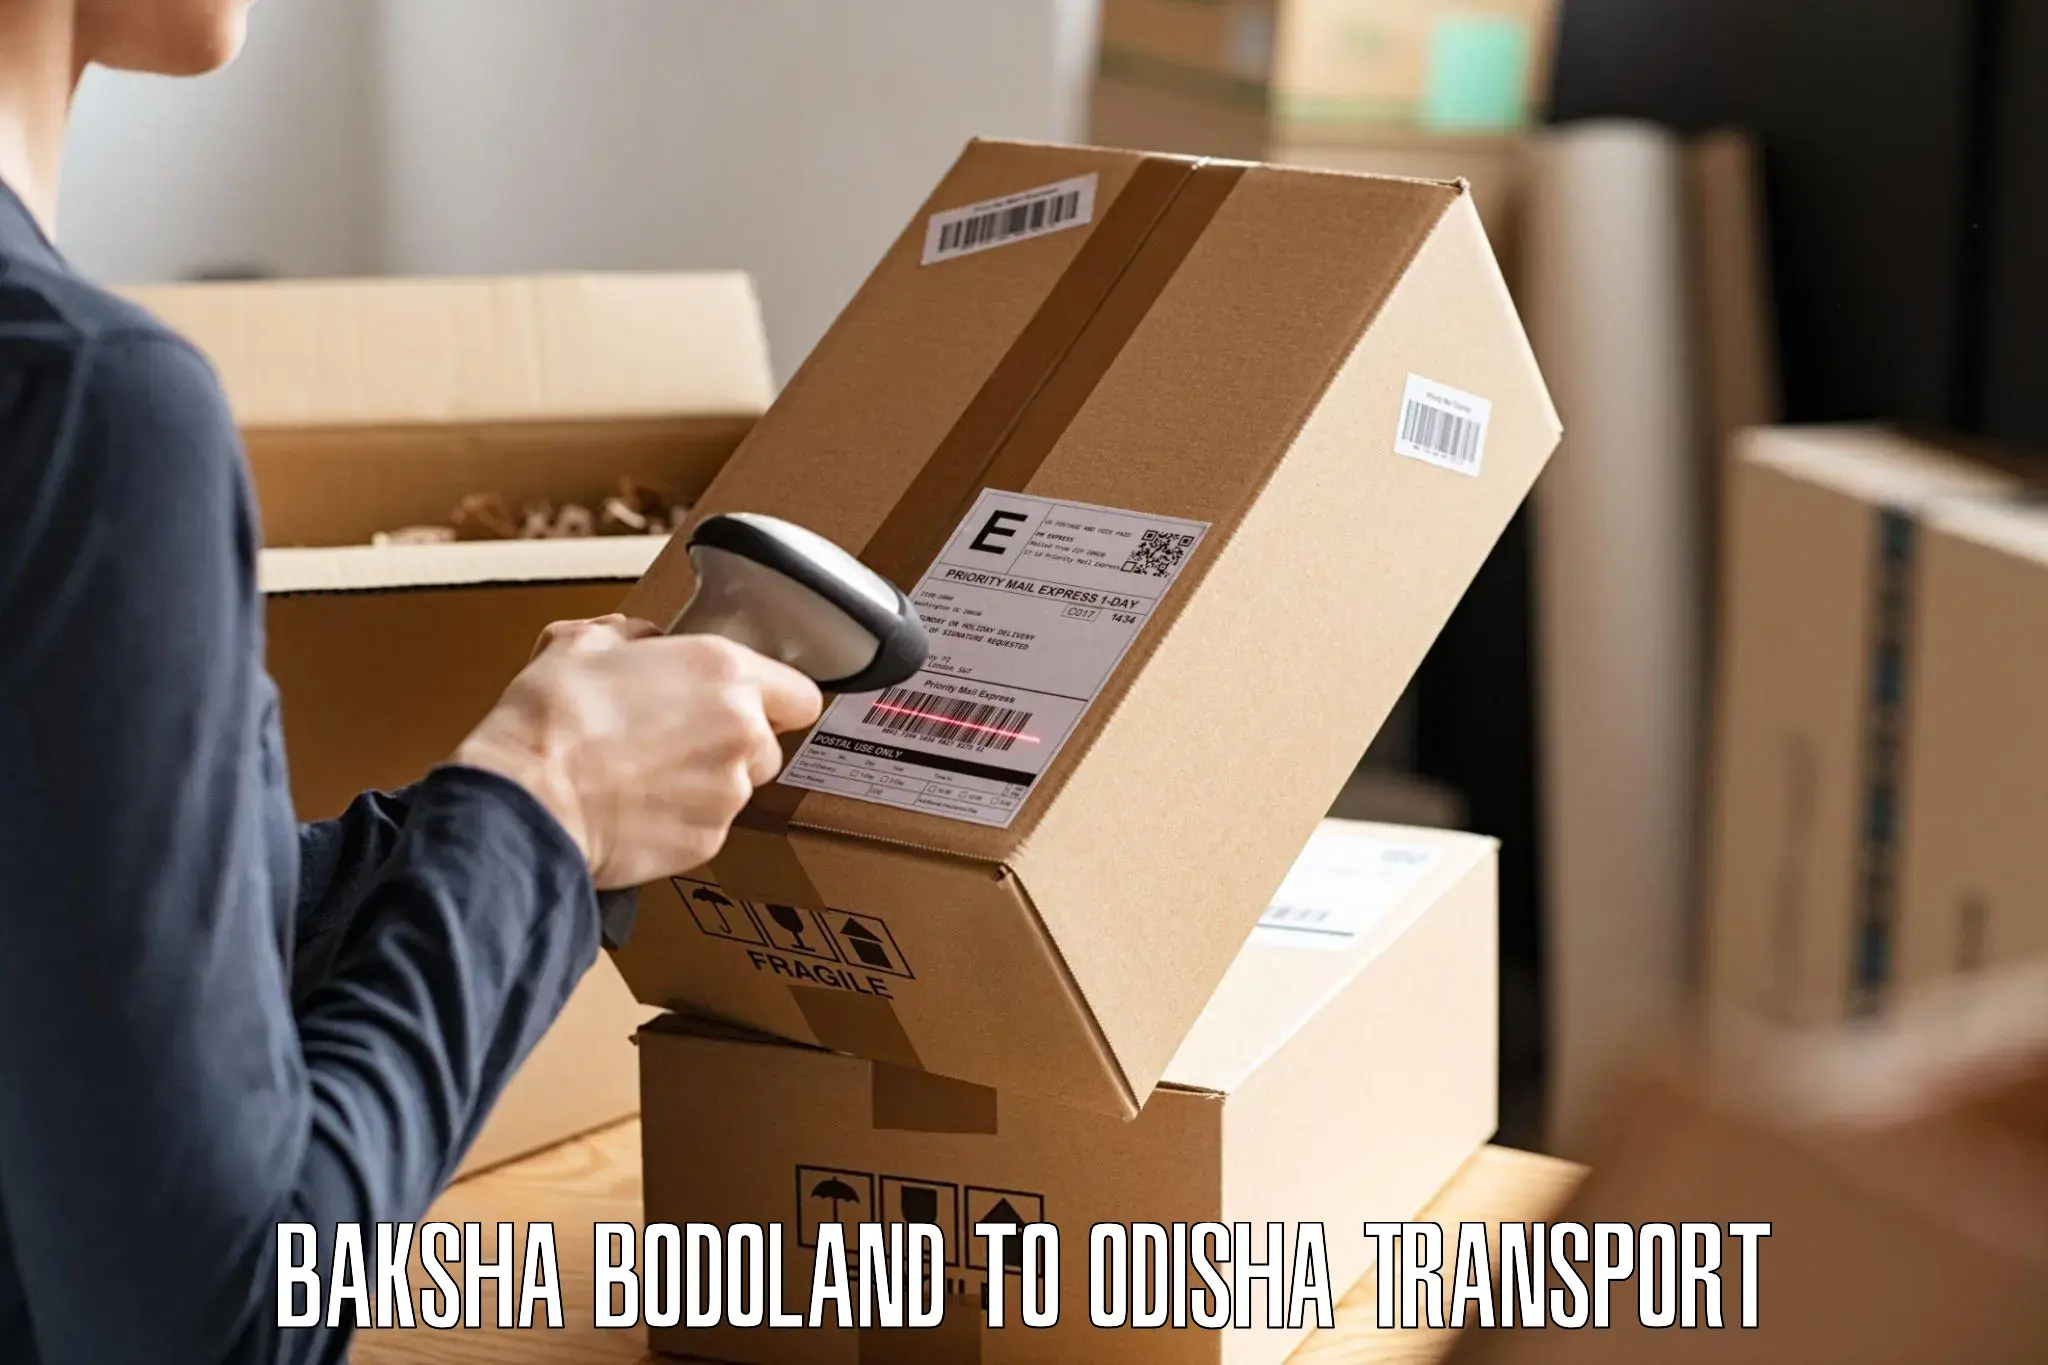 Two wheeler parcel service Baksha Bodoland to Loisingha